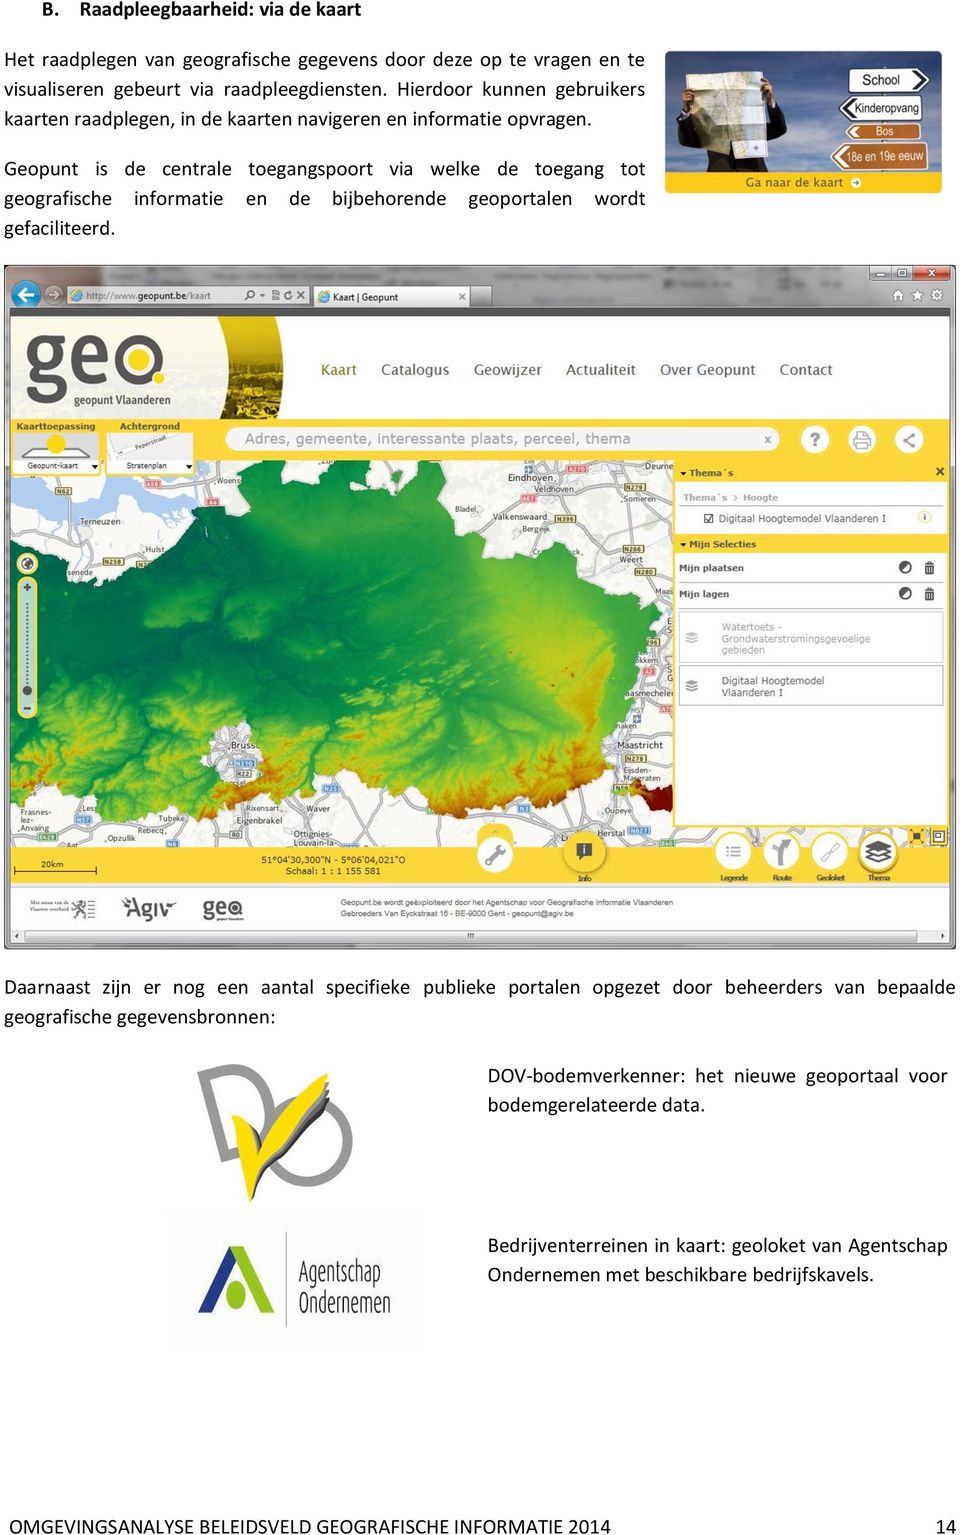 Geopunt is de centrale toegangspoort via welke de toegang tot geografische informatie en de bijbehorende geoportalen wordt gefaciliteerd.